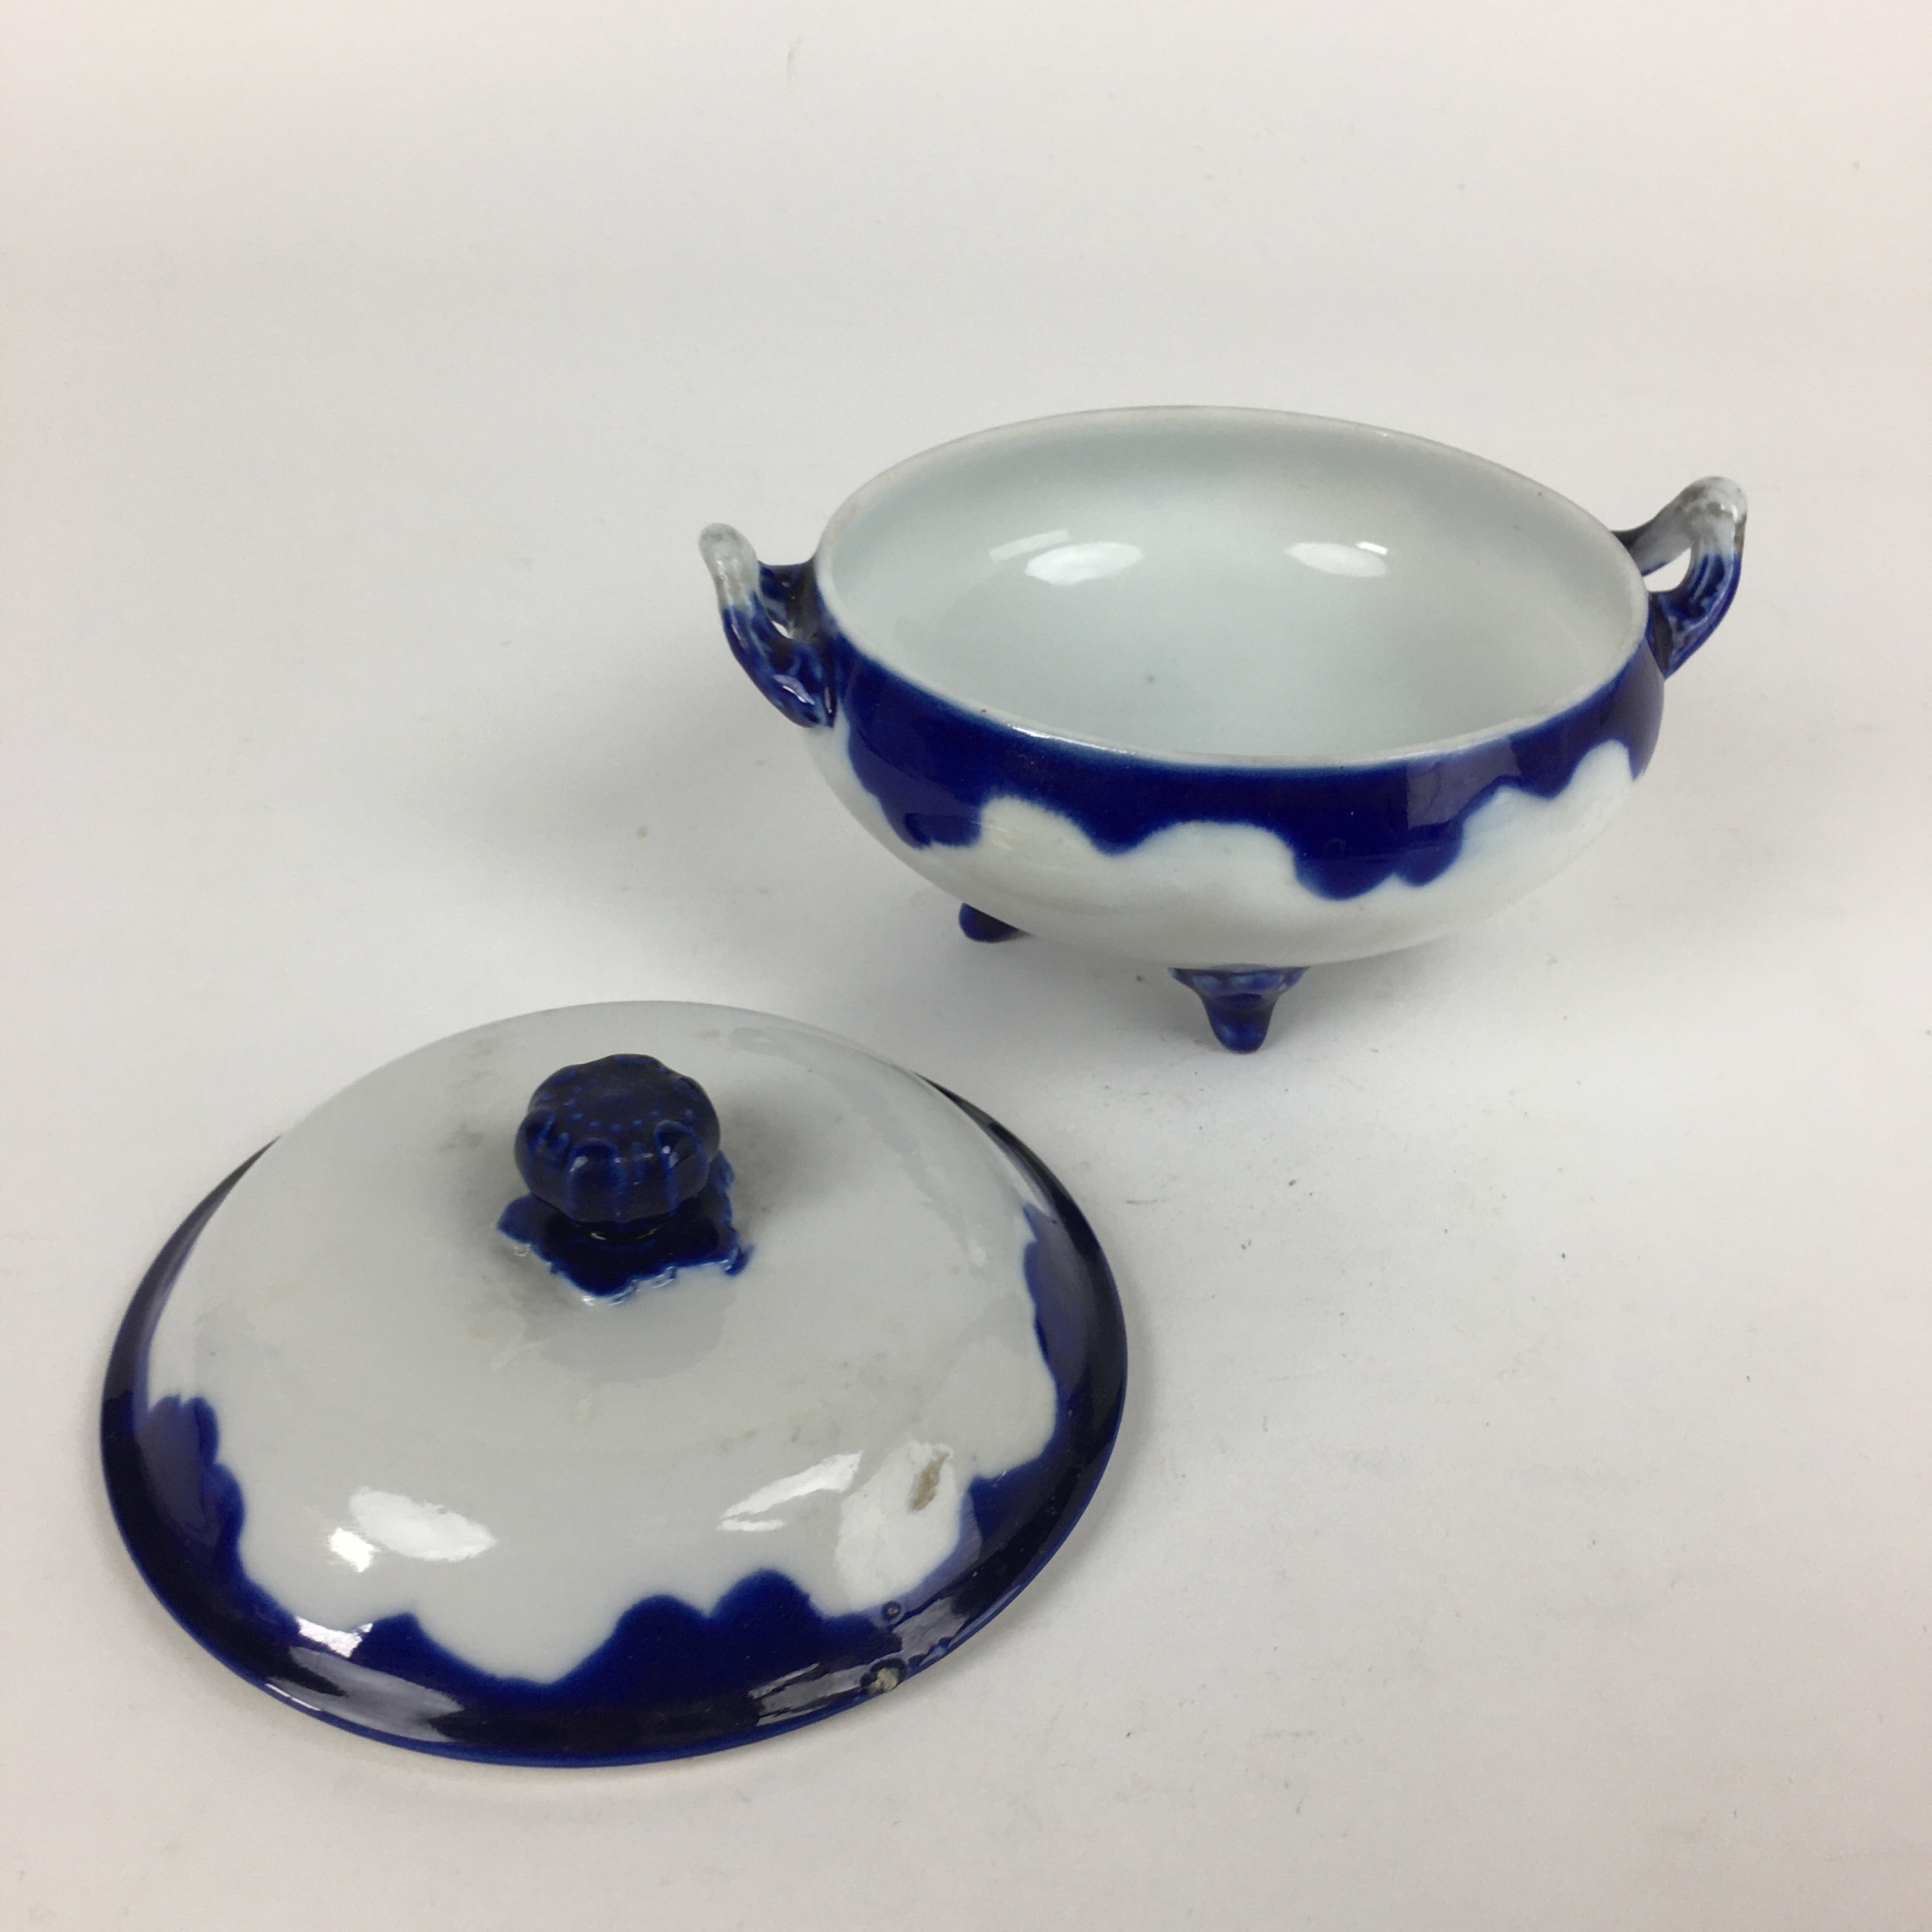 Japanese Porcelain Lidded Pot Vtg White Blue Two Handle Four Legs PP879